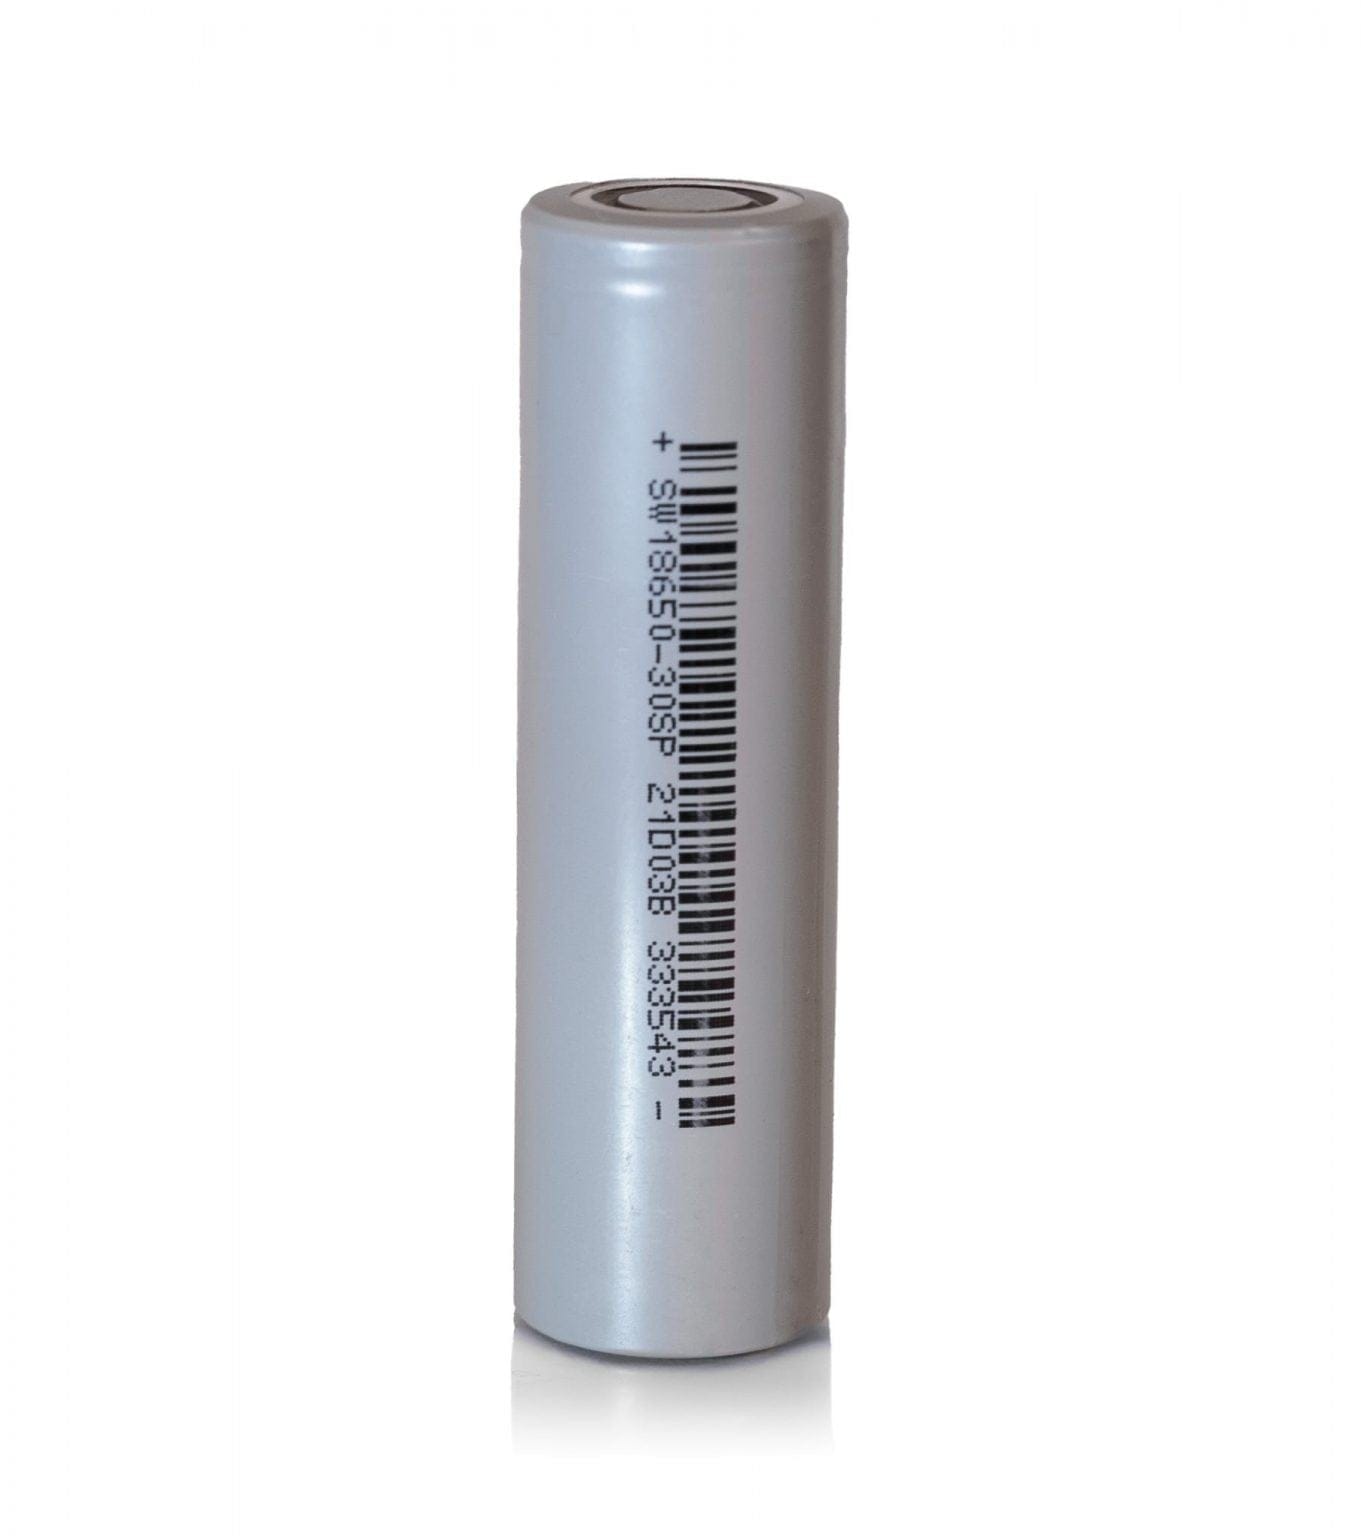 Sinowatt 30SP 18650 Battery | 18650 Lithium-ion Batteries | Fogstar UK